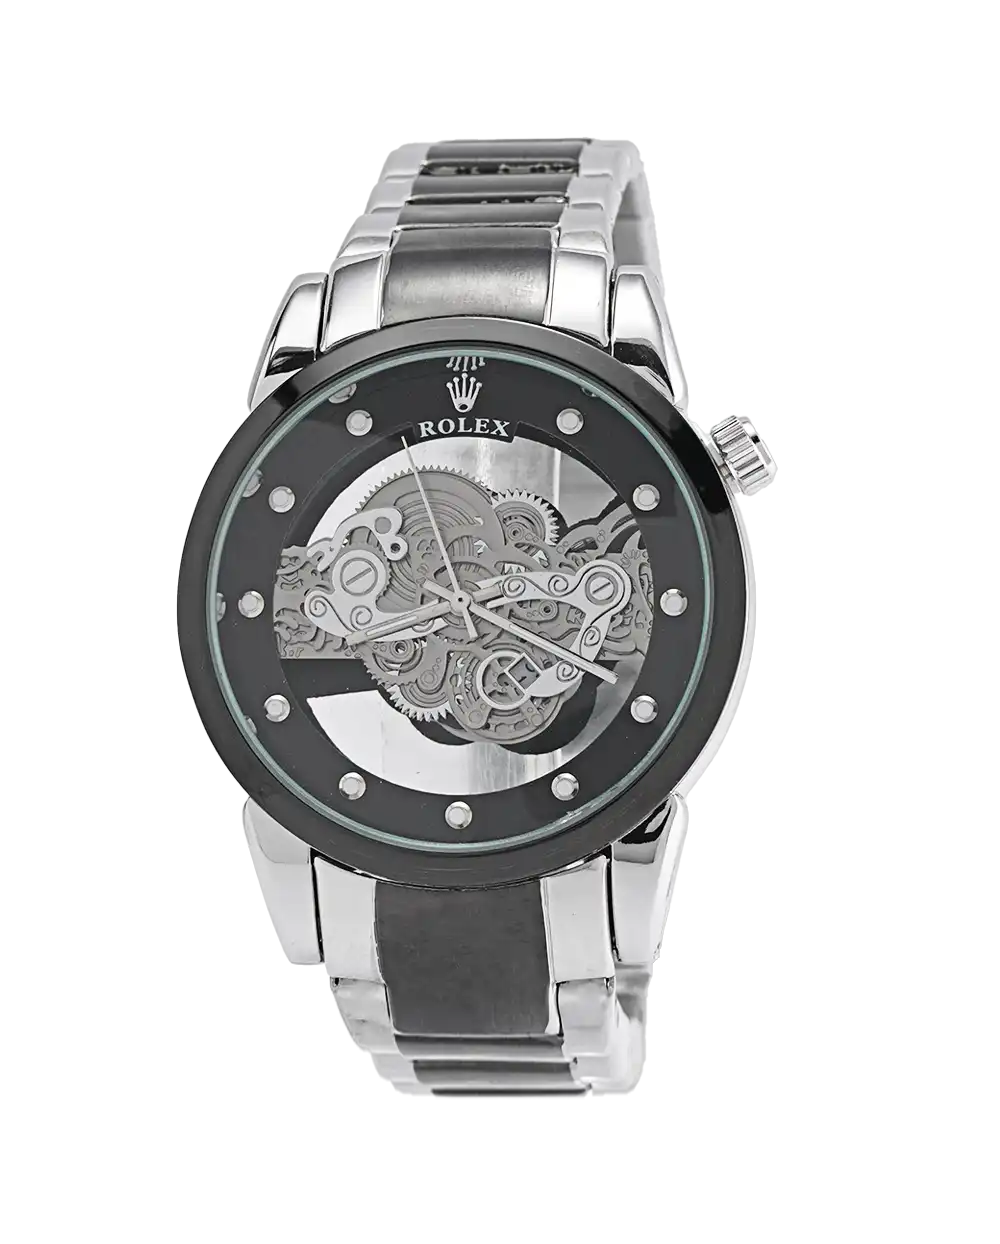 خرید ساعت مچی مردانه رولکس ROLEX صفحه اسکلتون مدل 1737 با بهترین قیمت همراه با ارسال رایگان به سراسر ایران و جعبه ی ساعت | ساعت موتور نمایان